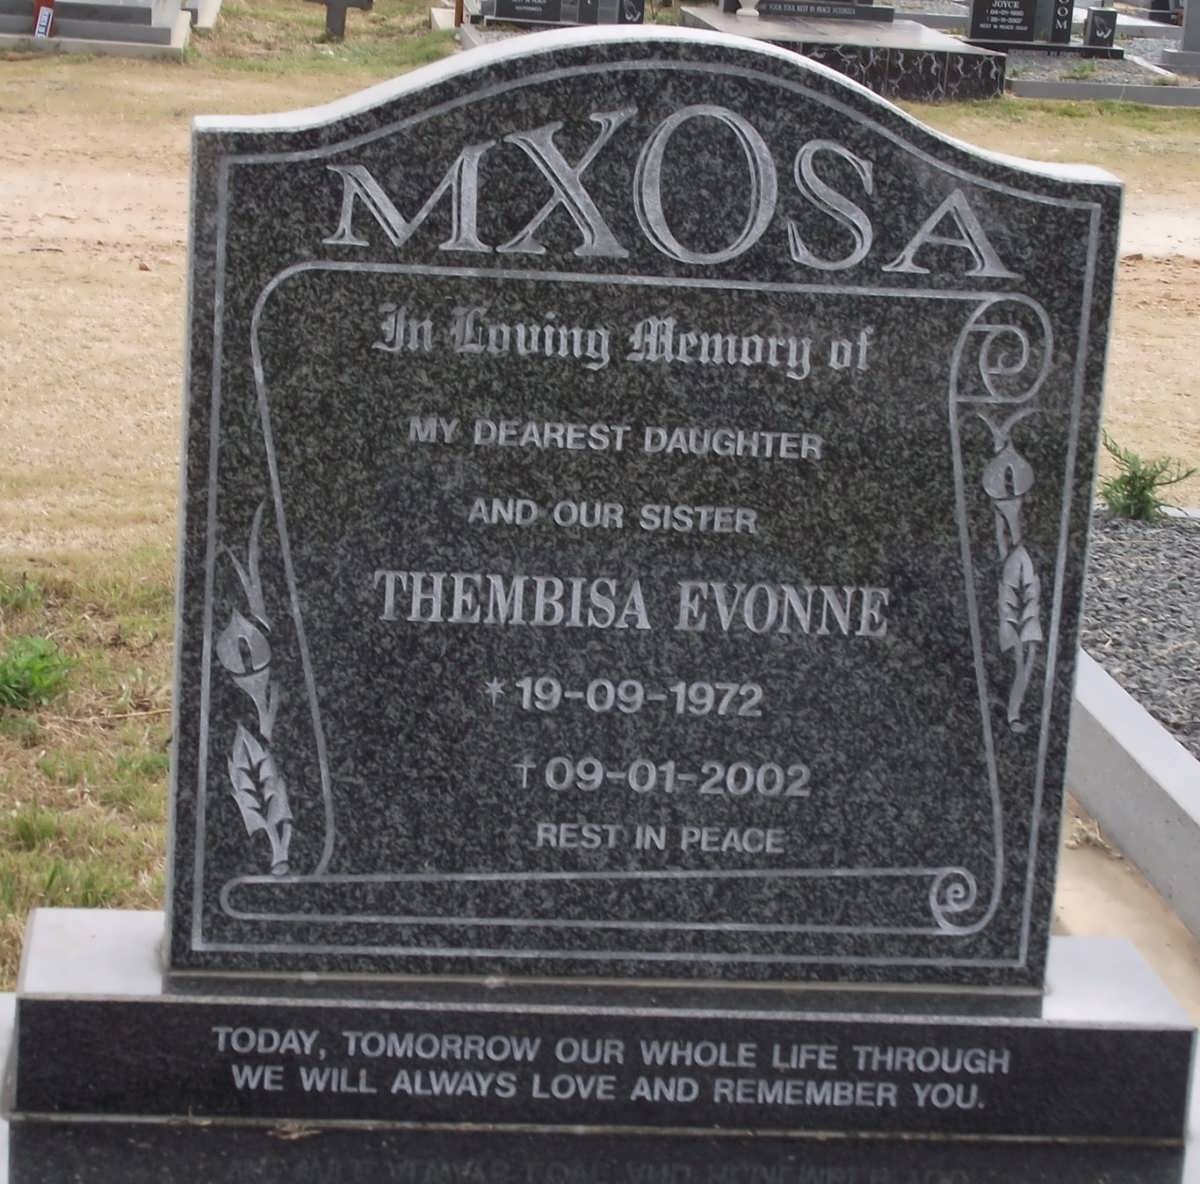 MXOSA Thembisa Evonne 1972-2002